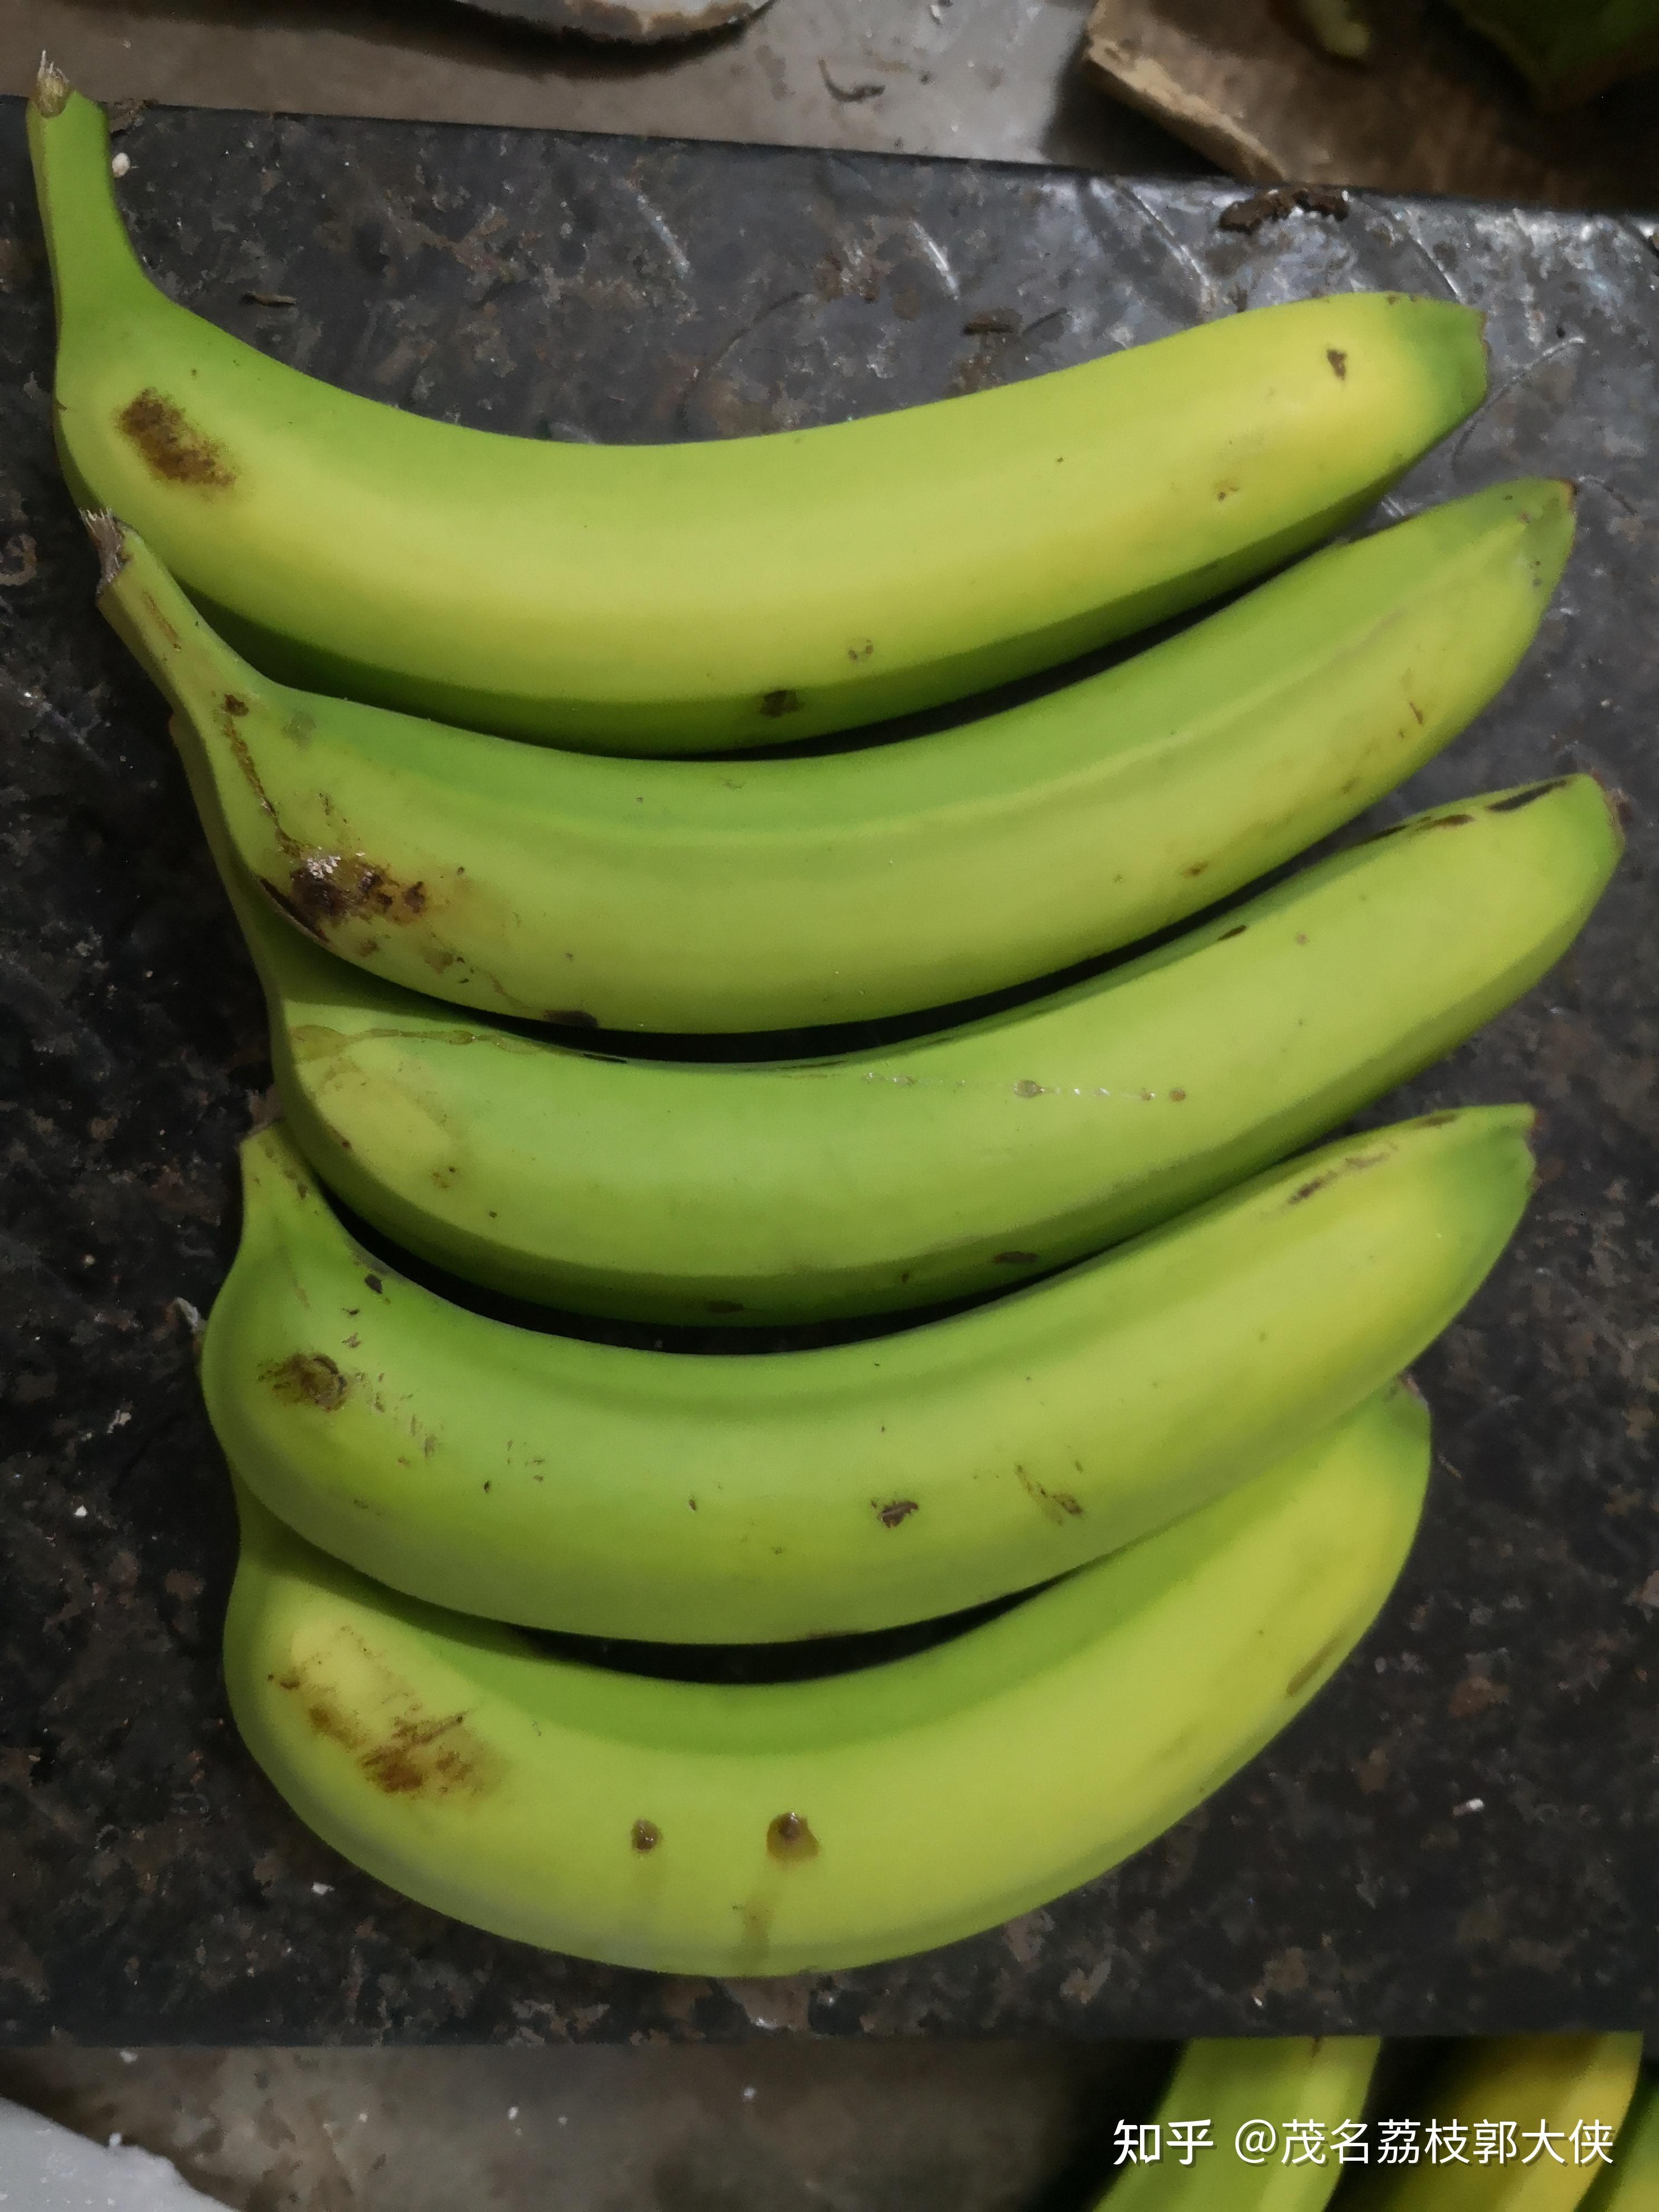 树上熟的香蕉会比提前割下的更好吃吗